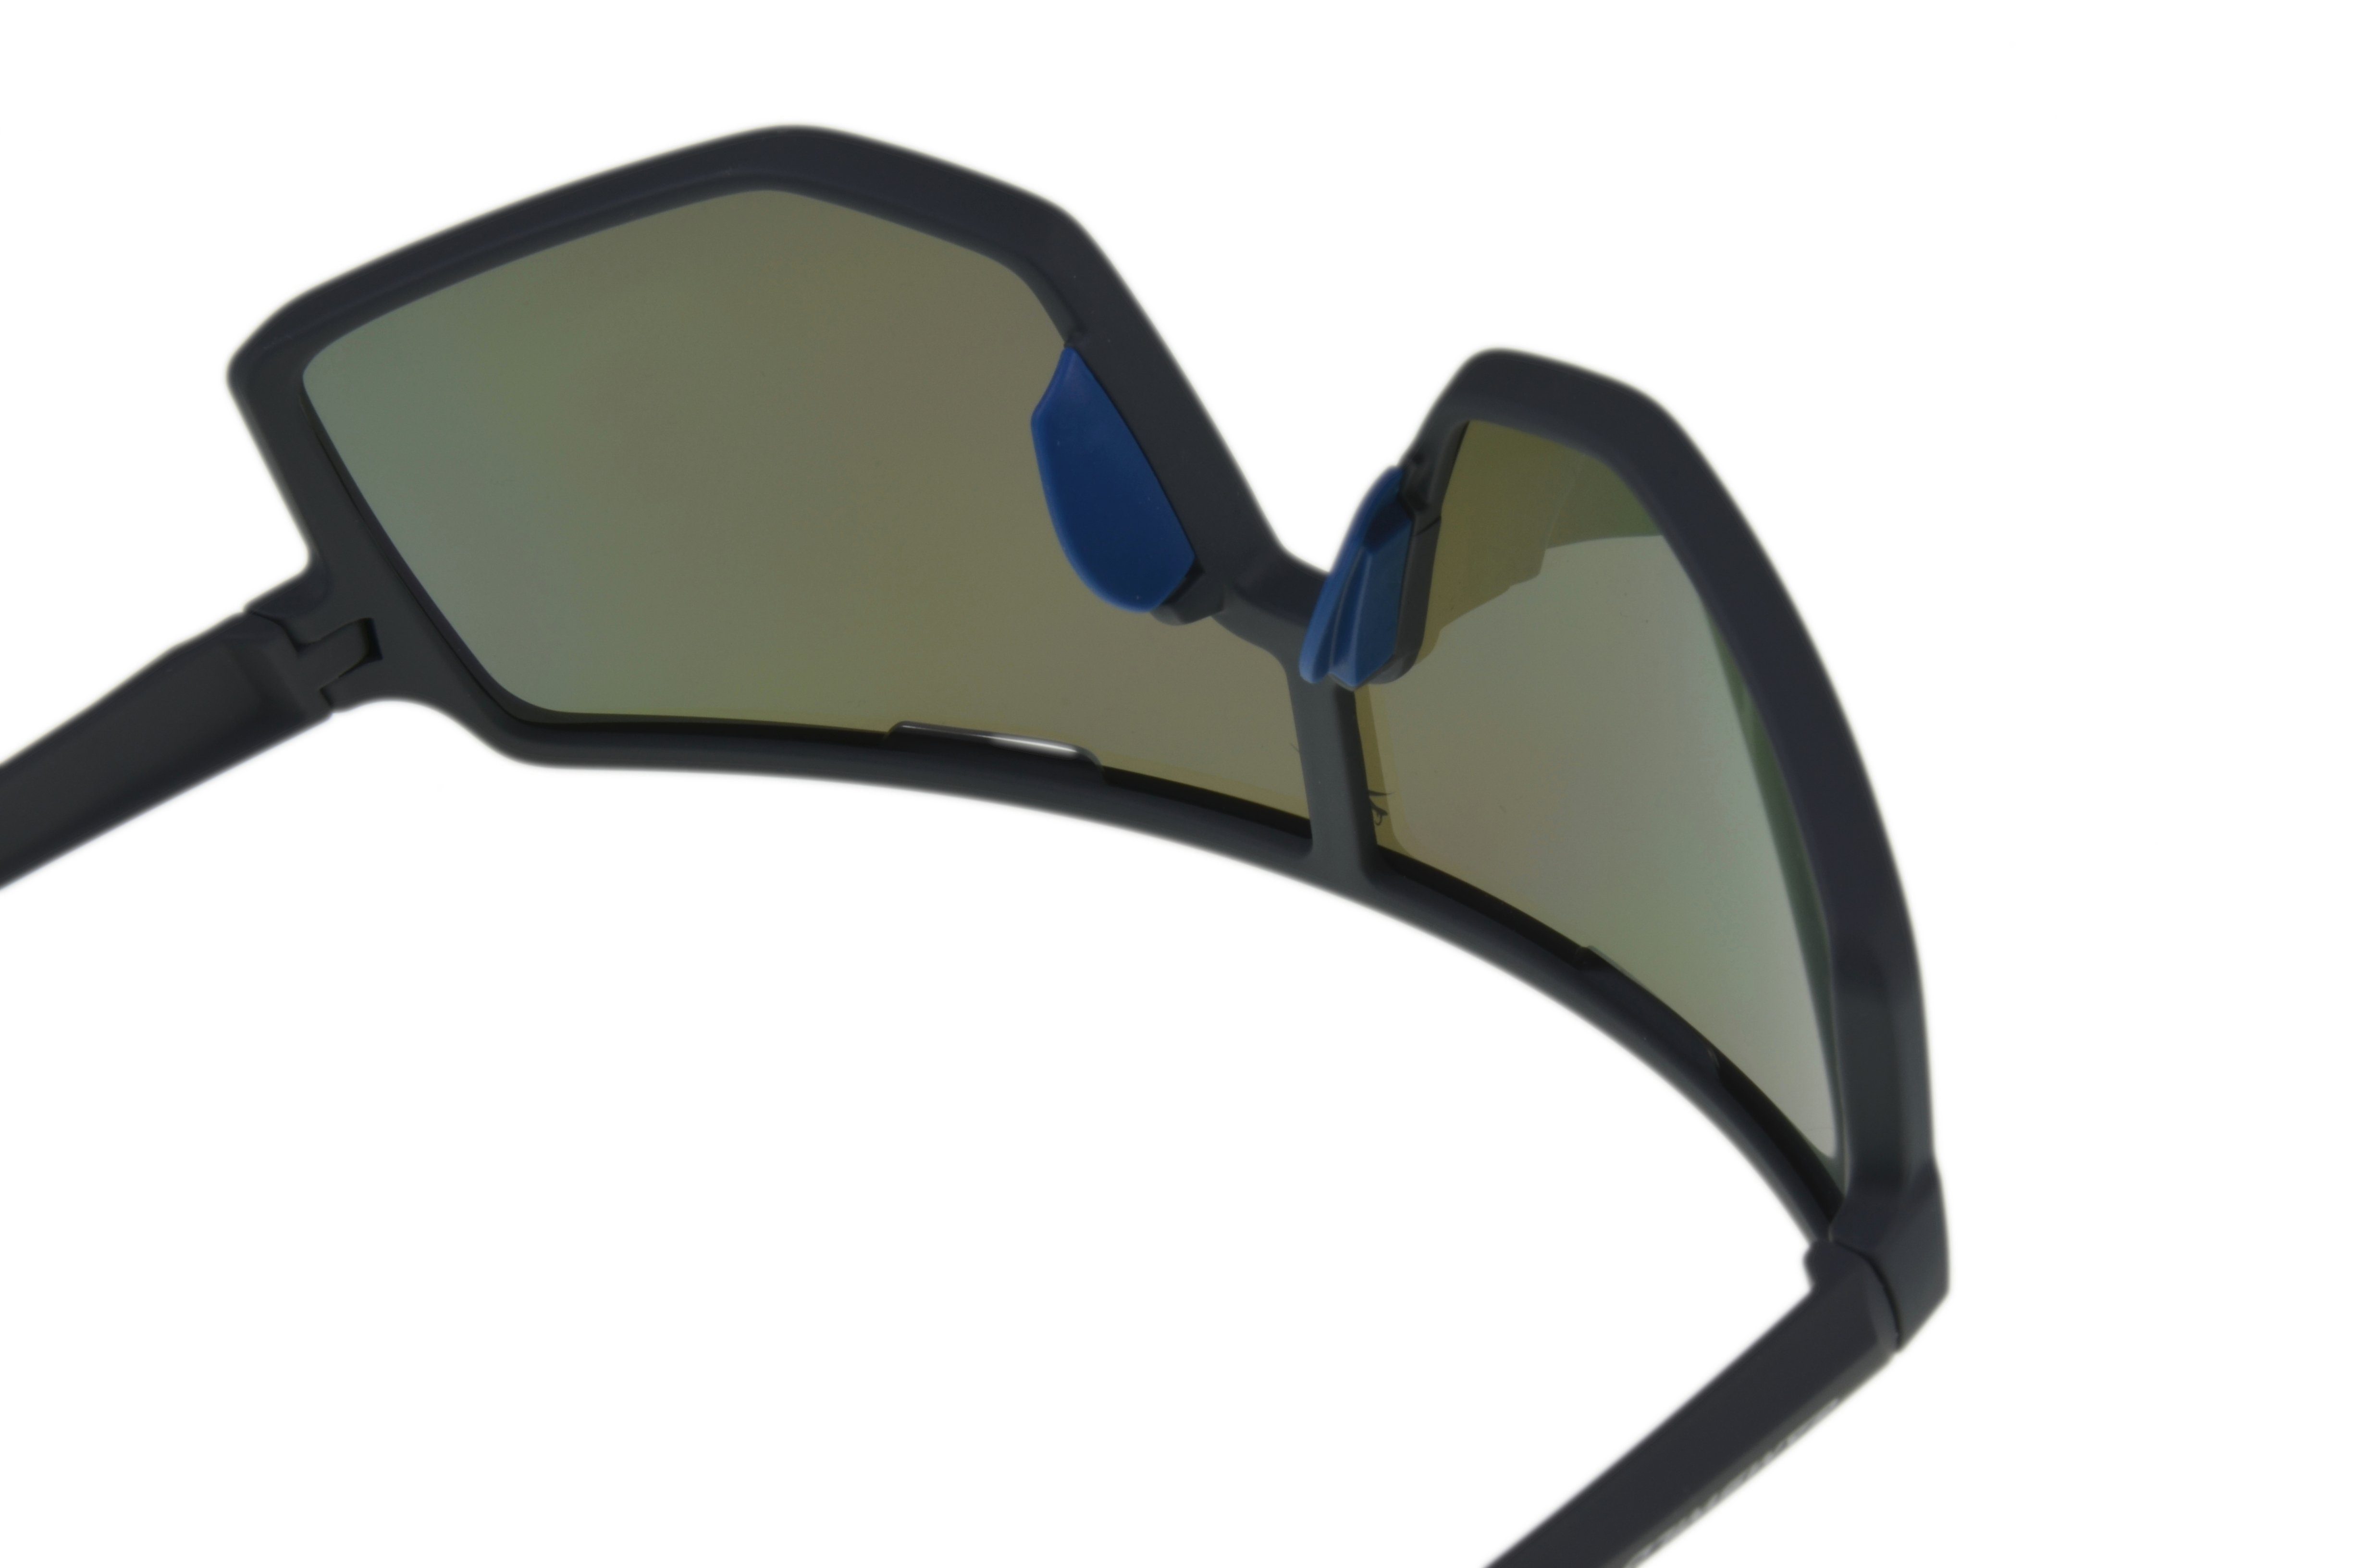 Herren Sonnenbrille schwarz-rot, Unisex lila, Gamswild Unisex, Skibrille grün Damen TR90 WS4042 Fahrradbrille Sonnenbrille schwarz-blau,